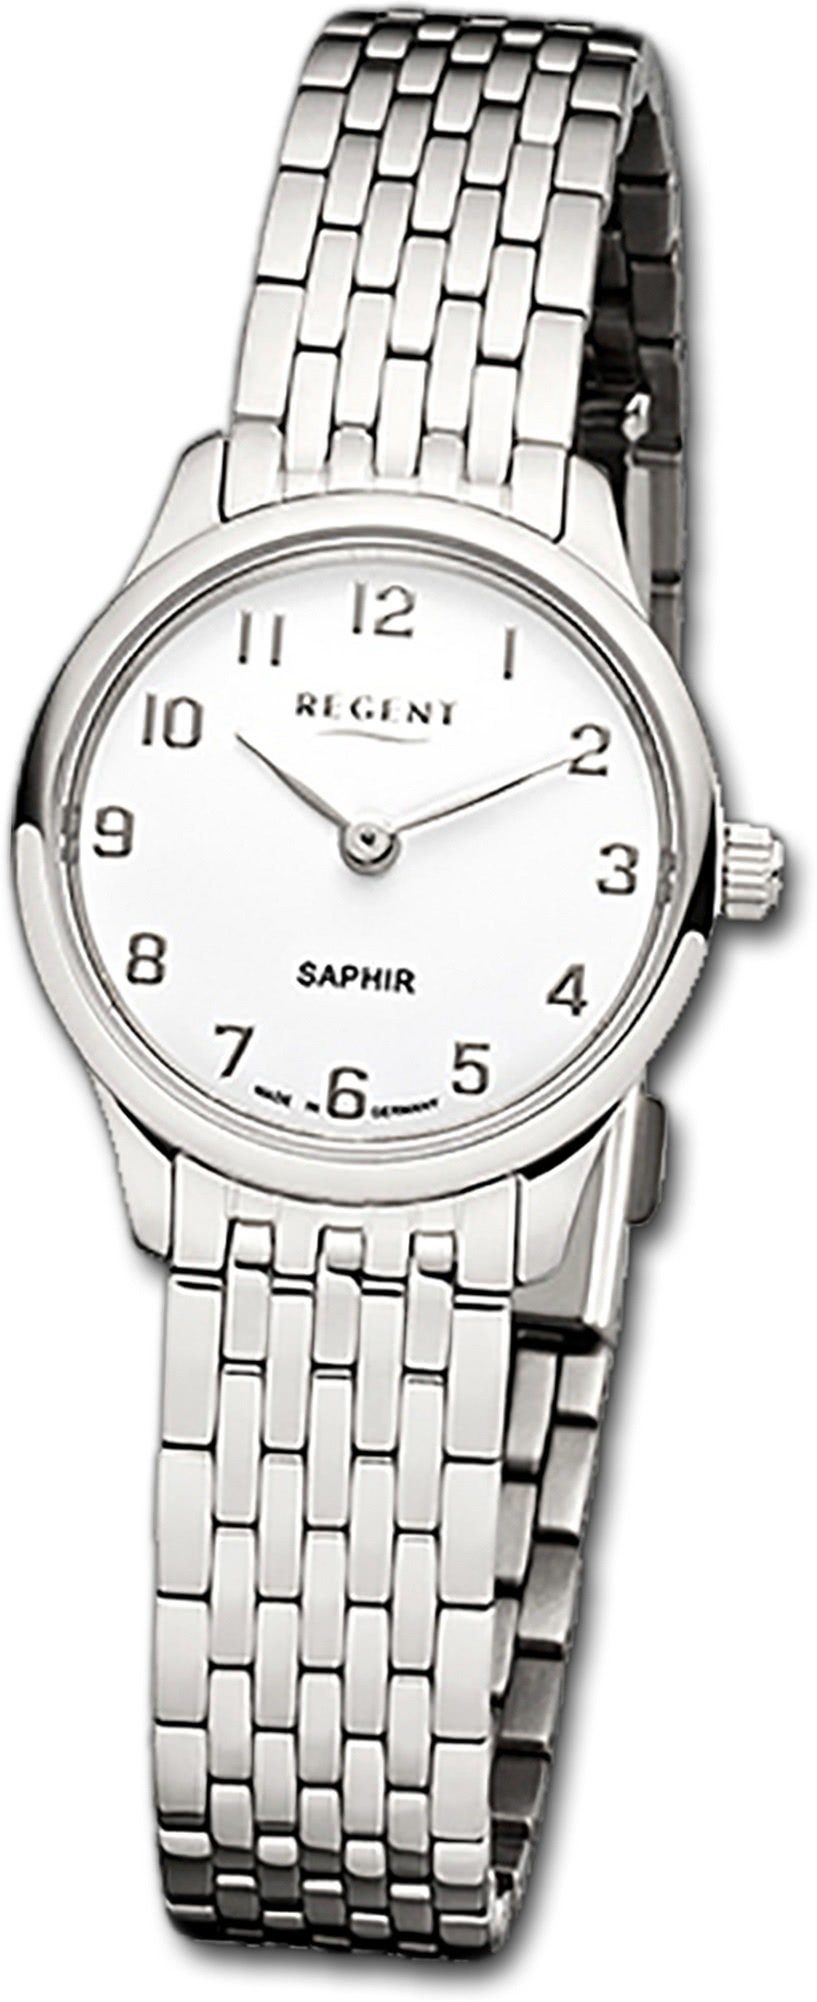 Regent Quarzuhr Regent Metall Damen Uhr GM-1457 Analog, Damenuhr Metallarmband, rundes Gehäuse, klein (ca. 25mm), weiß